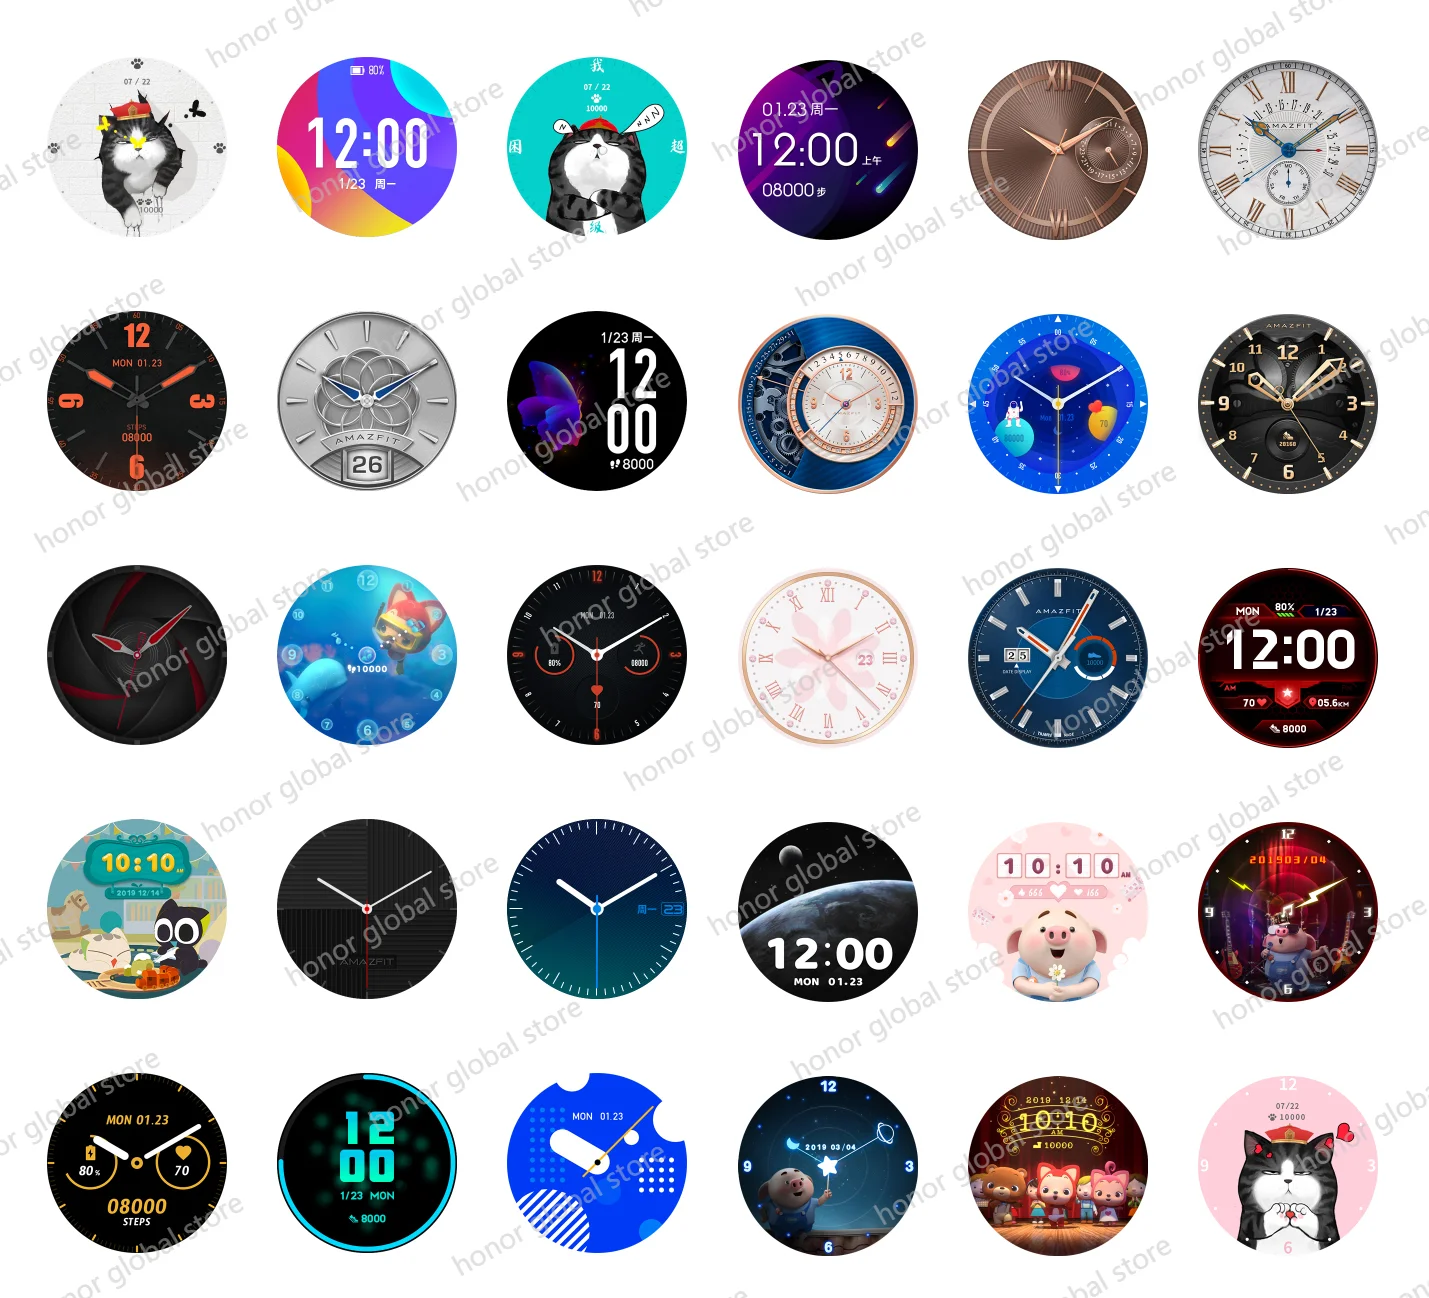 Глобальная версия Xiaomi Amazfit GTR Смарт часы 42 мм 5 АТМ Водонепроницаемый 24 дня батарея gps Смарт женские часы Xiaomi Android часы